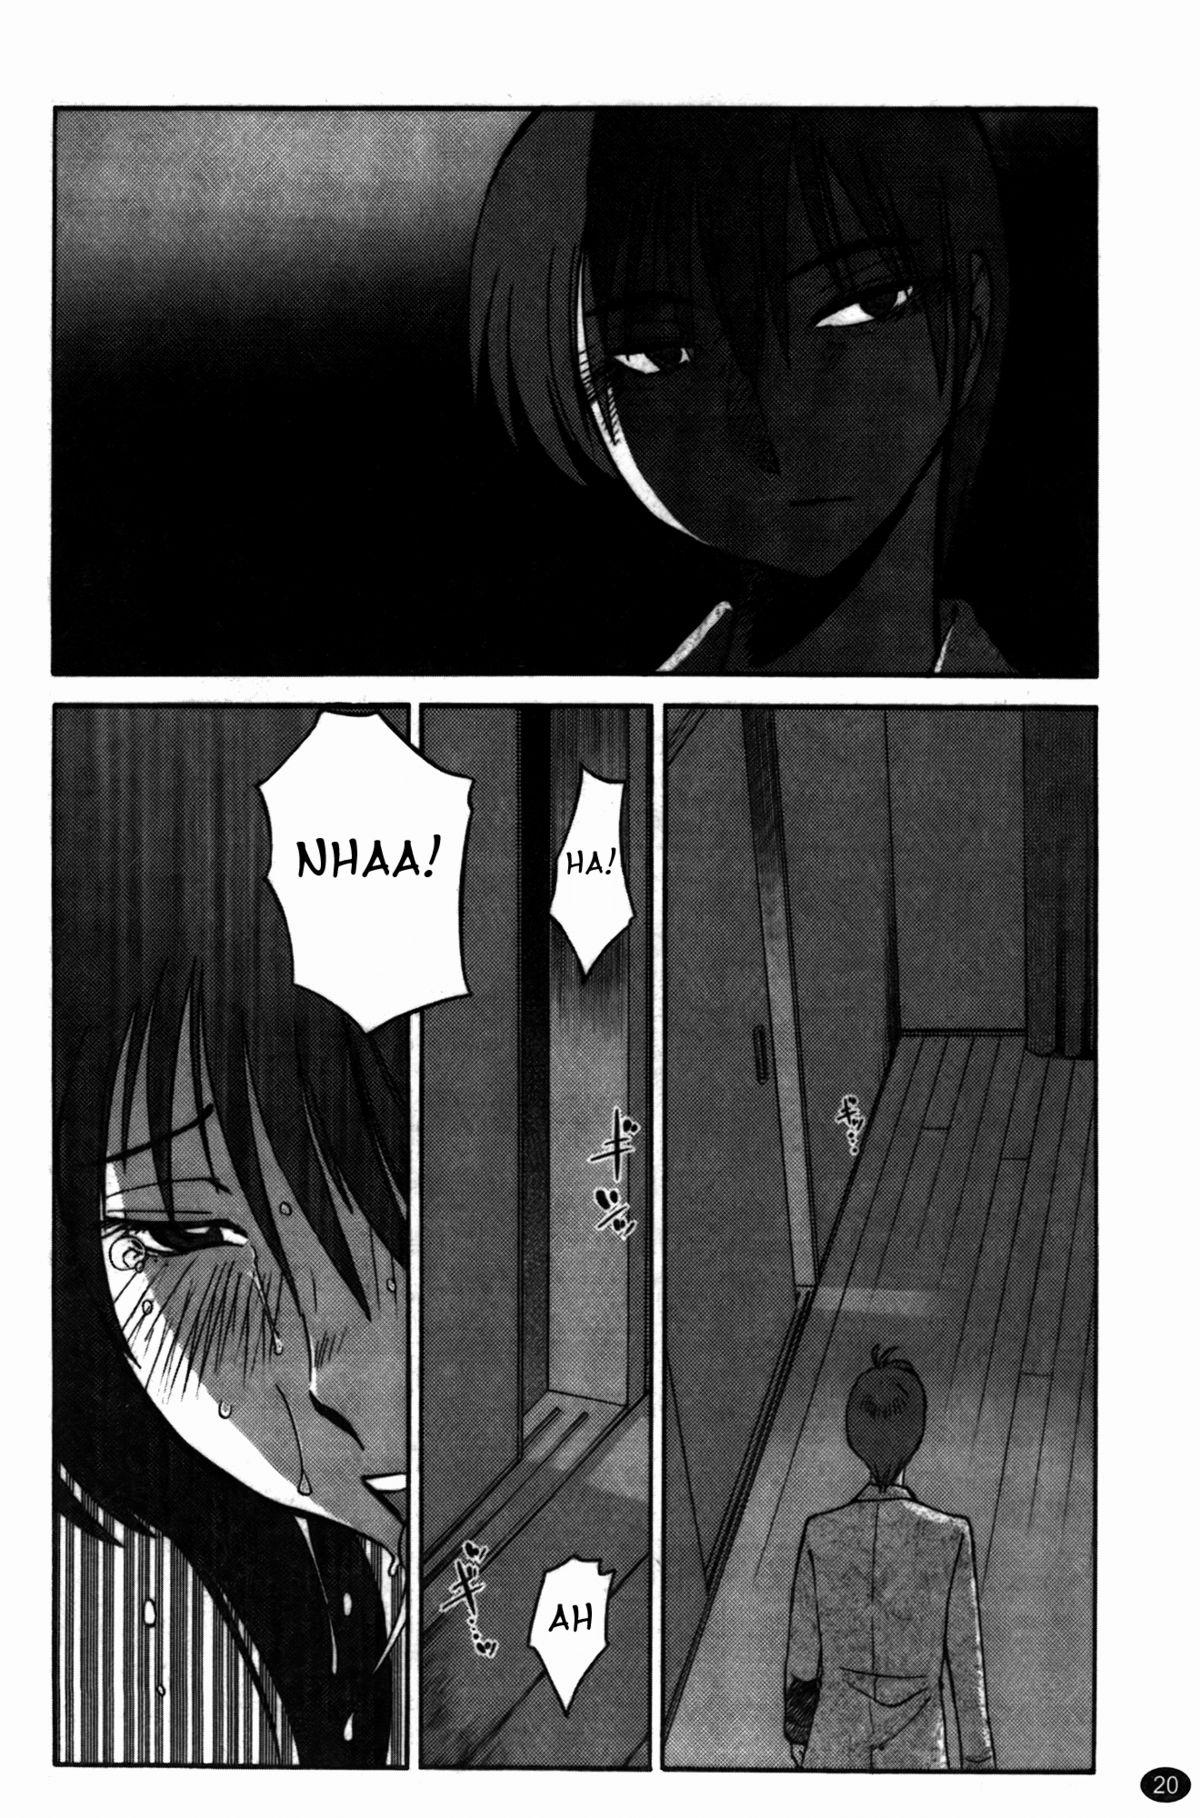 Monokage no Irisu Volume 3 Chapter 17 20